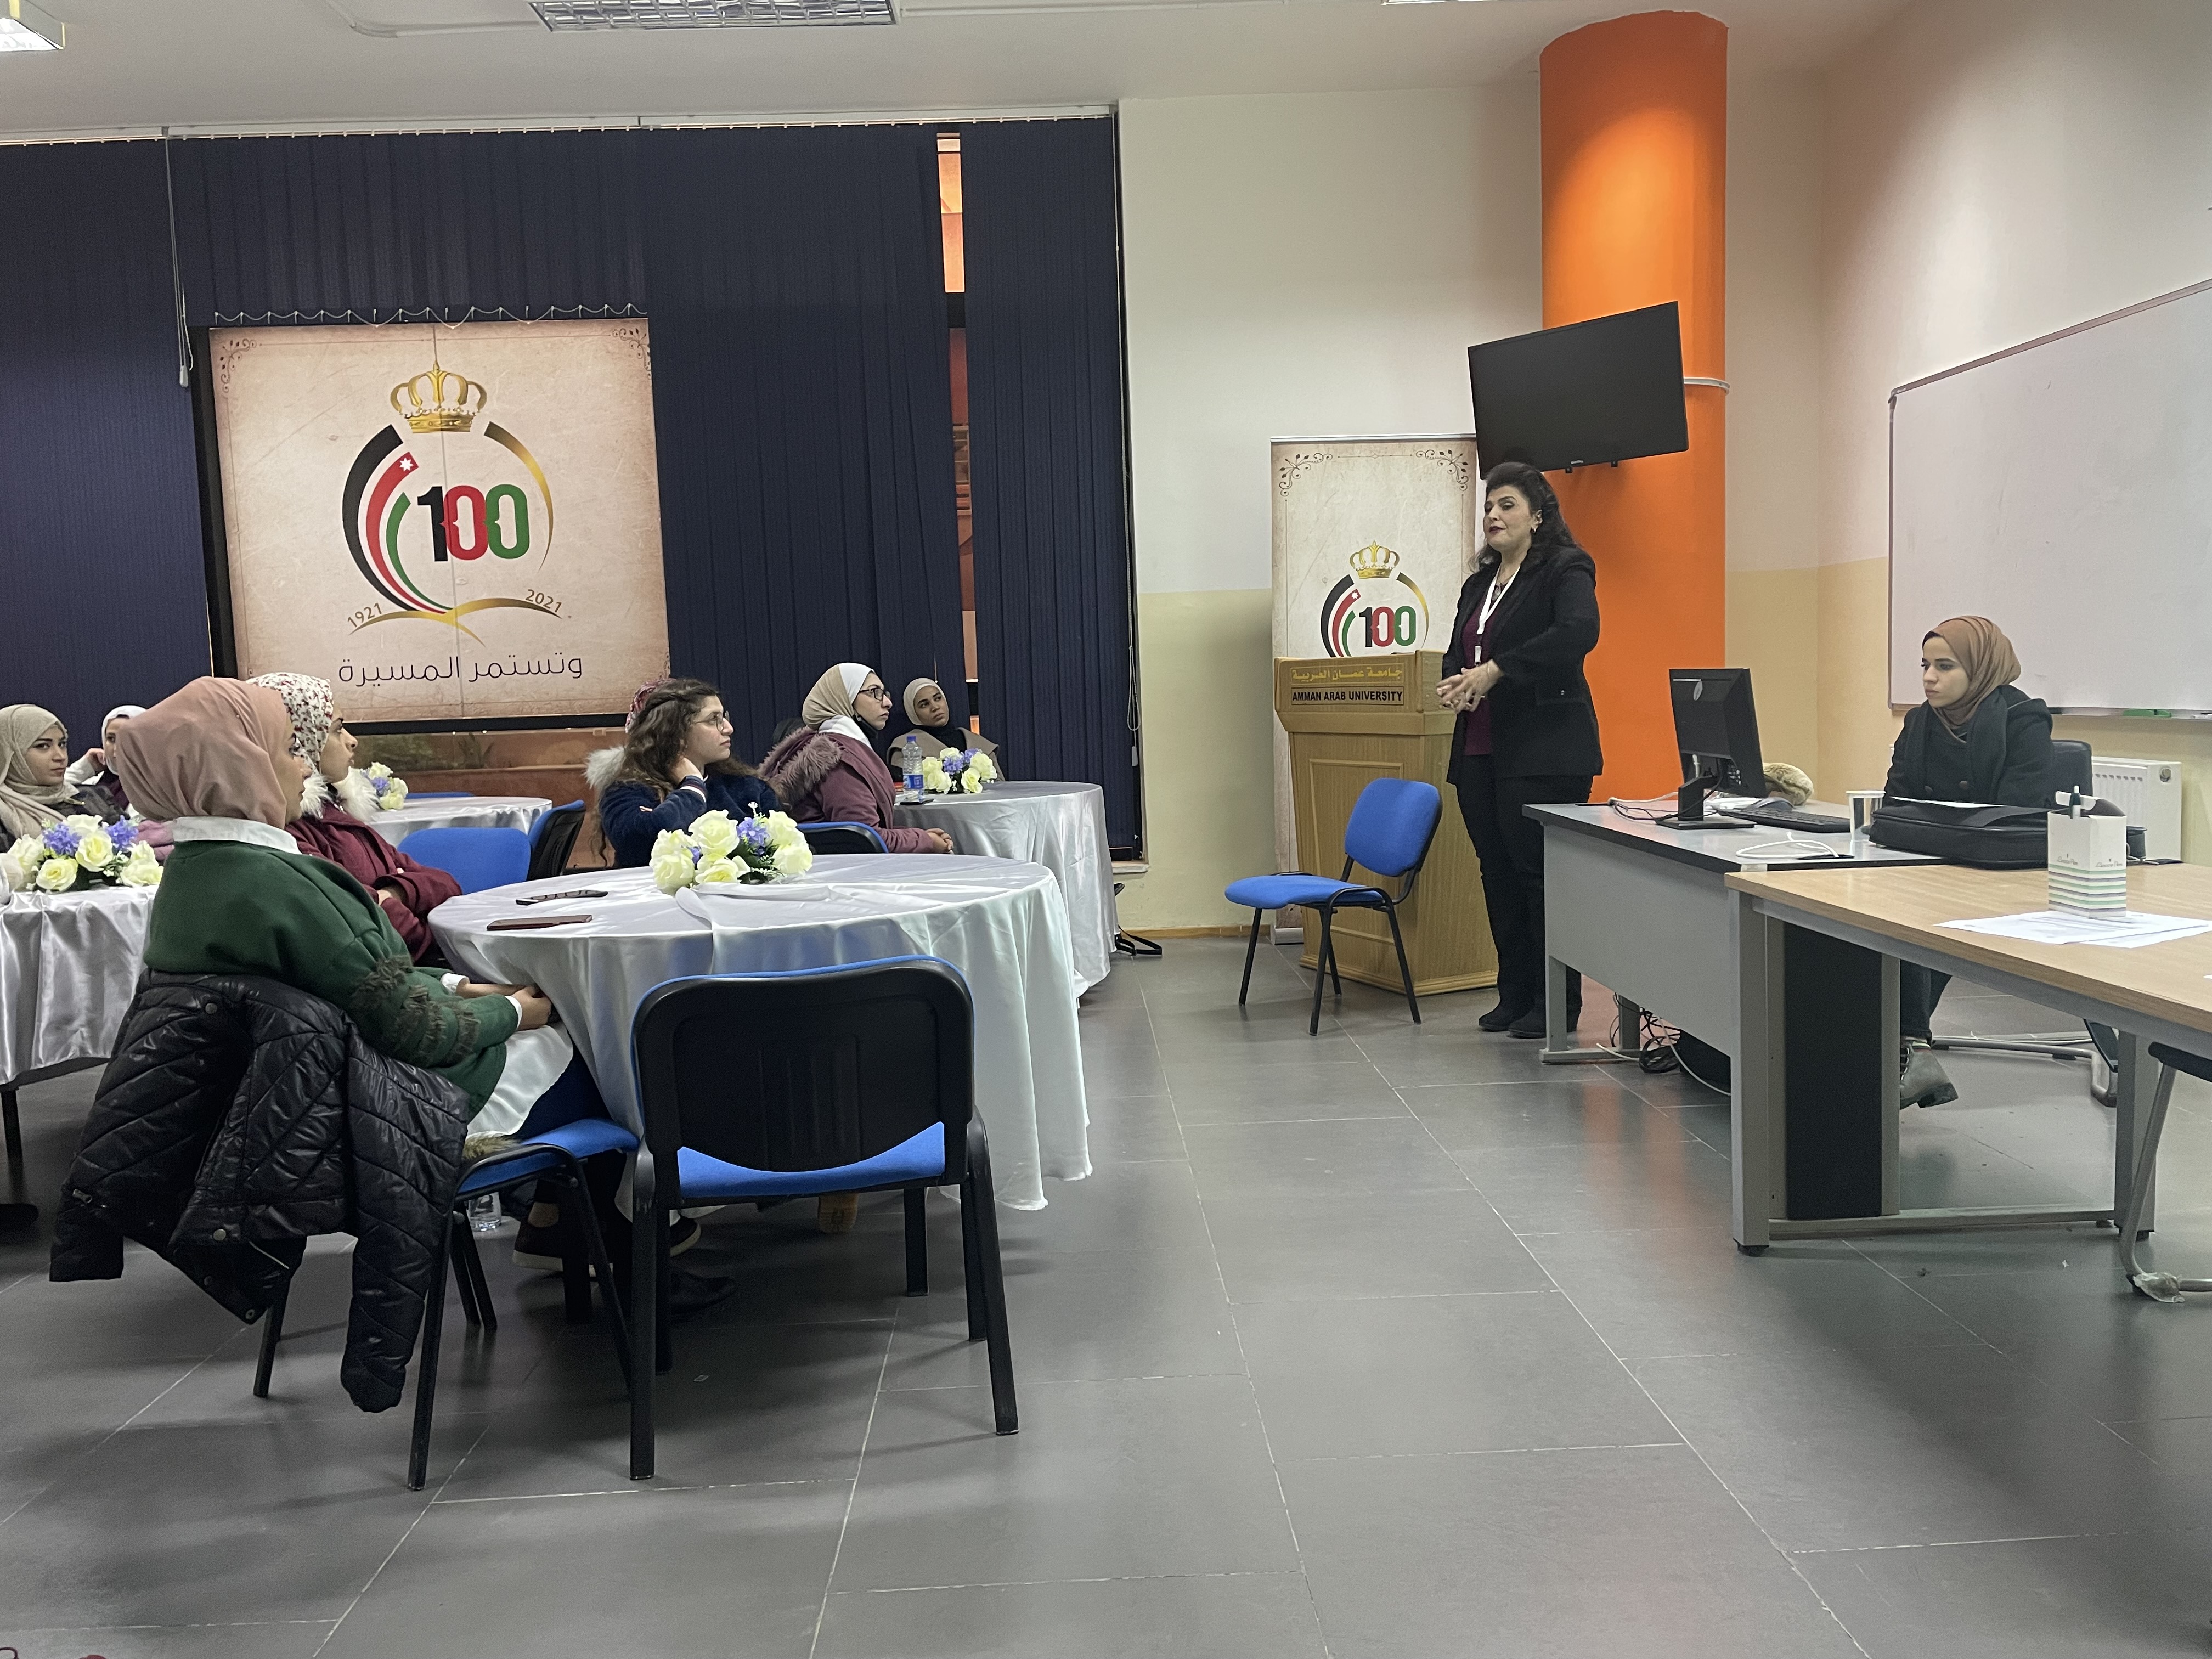 اختتام دورات تدريبية في "عمان العربية"11